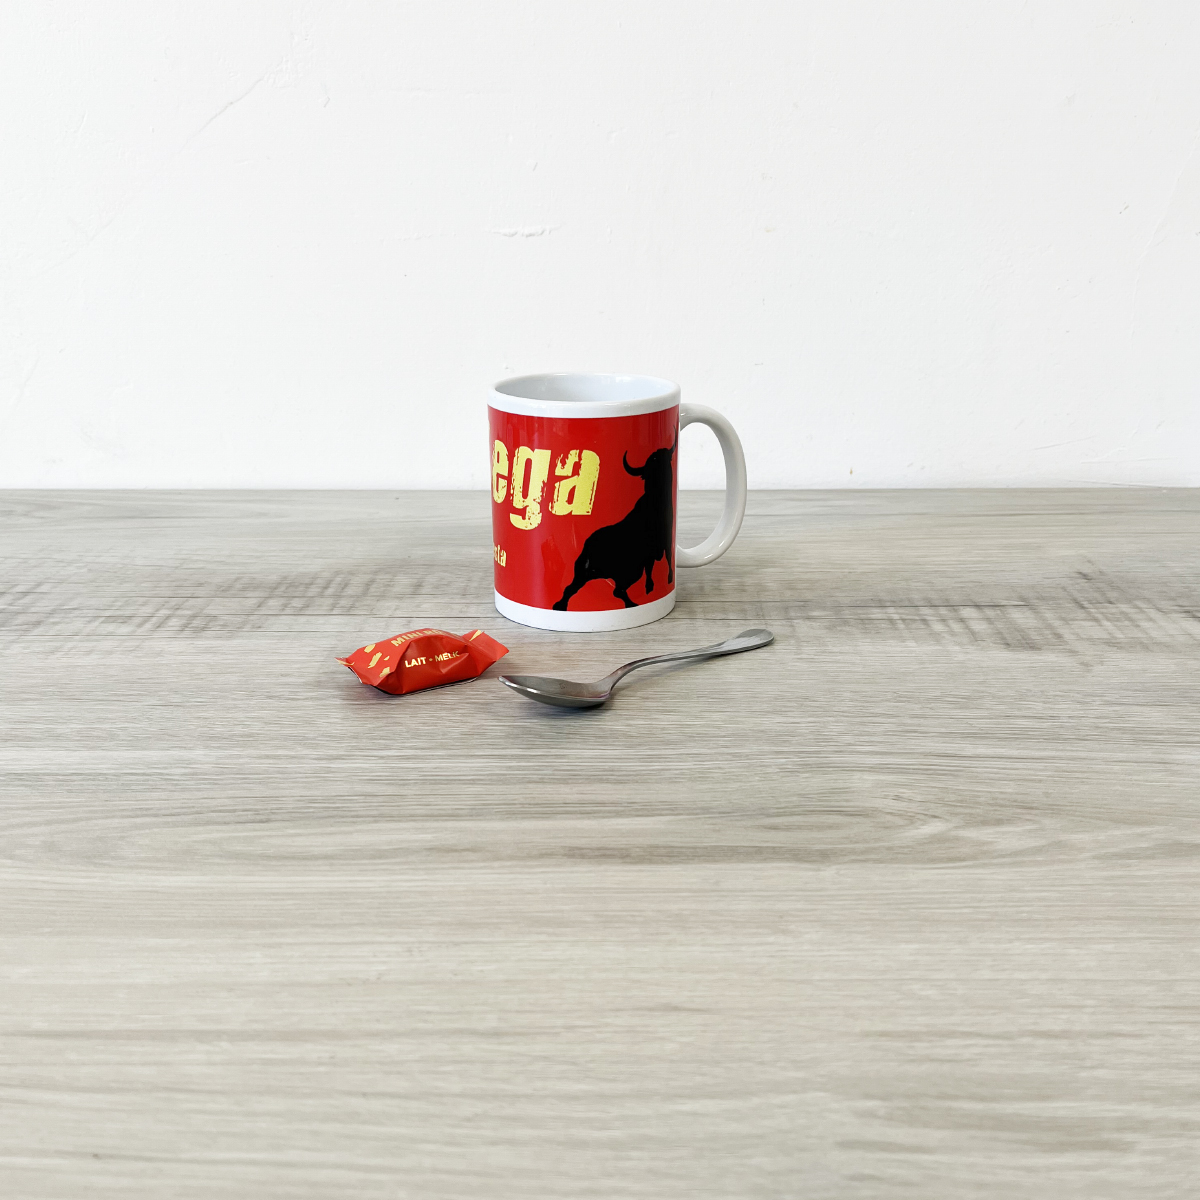 Bodega ceramic mug by Cbkreation